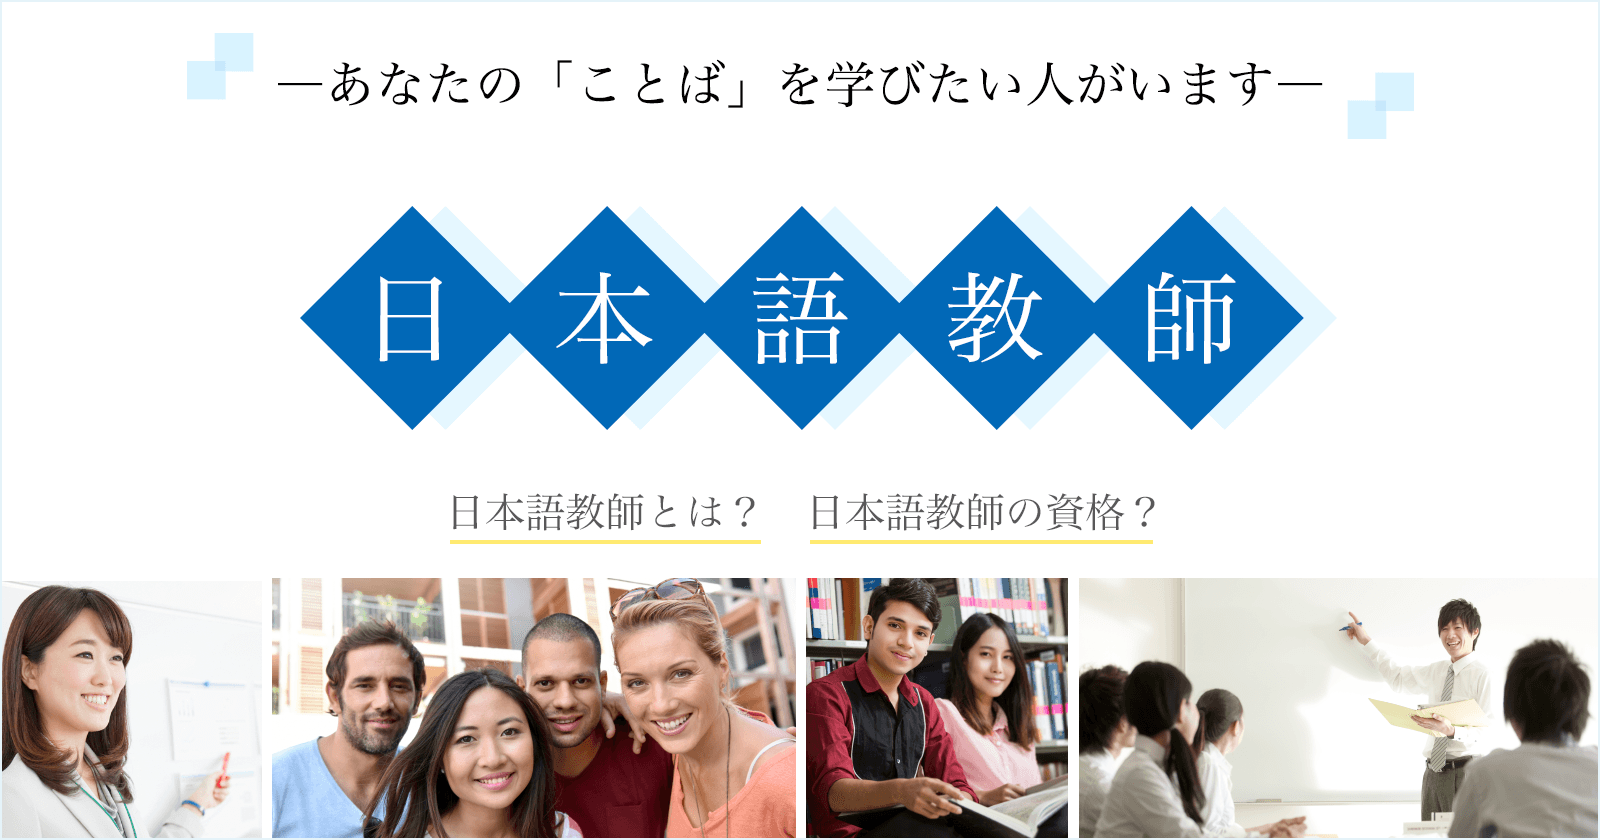 一般社団法人全国日本語教師養成協議会 2001年 国内外の日本語教師養成講座運営機関が集まり設立 幅広く日本語教育 日本語教師 養成に貢献することを目的としています 日本語教師の実践力を測る 全養協日本語教師検定 公開講座等を開催しています 日本語教師